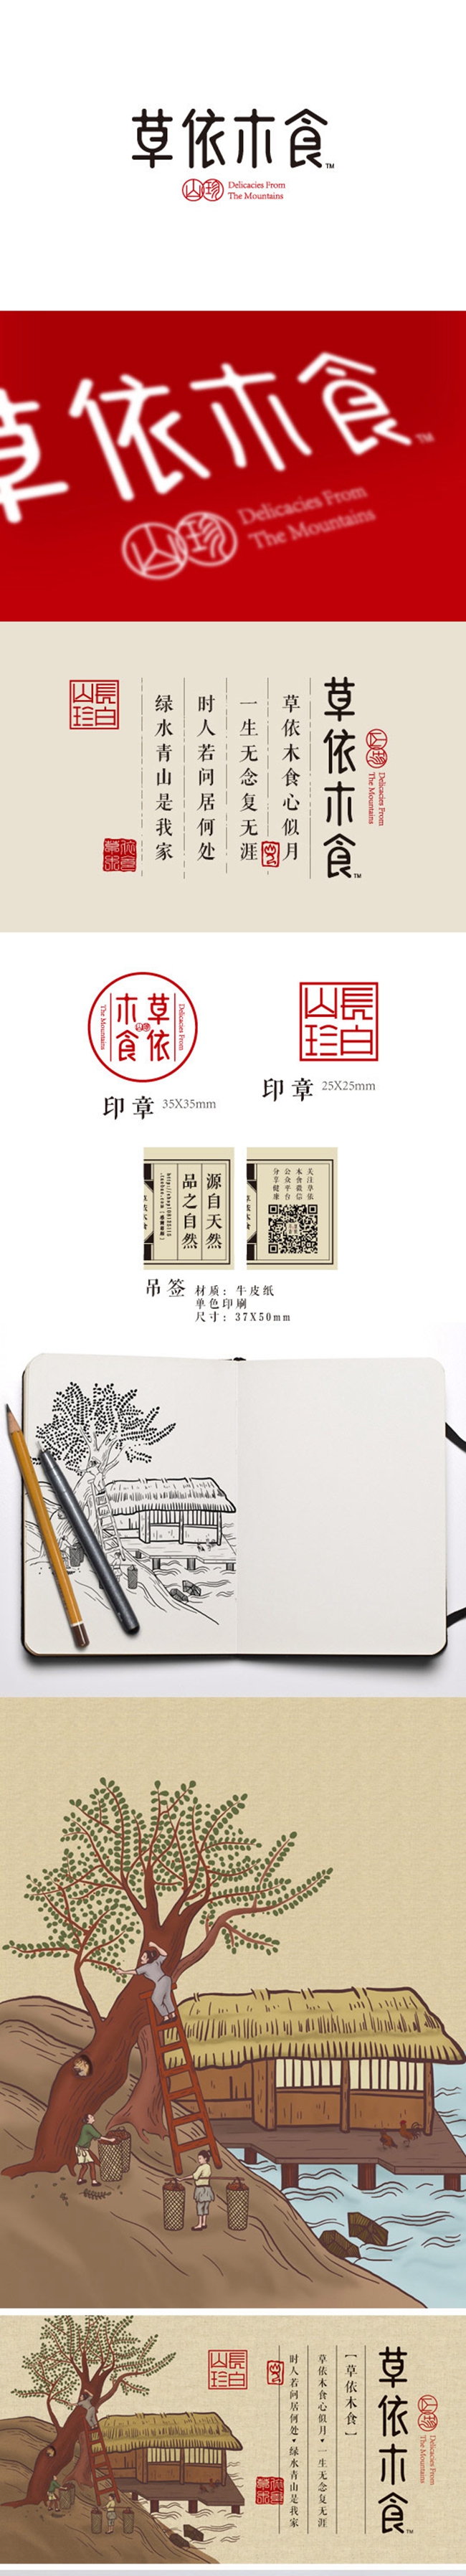 中国风风格包装设计-草依木食干果包装设计